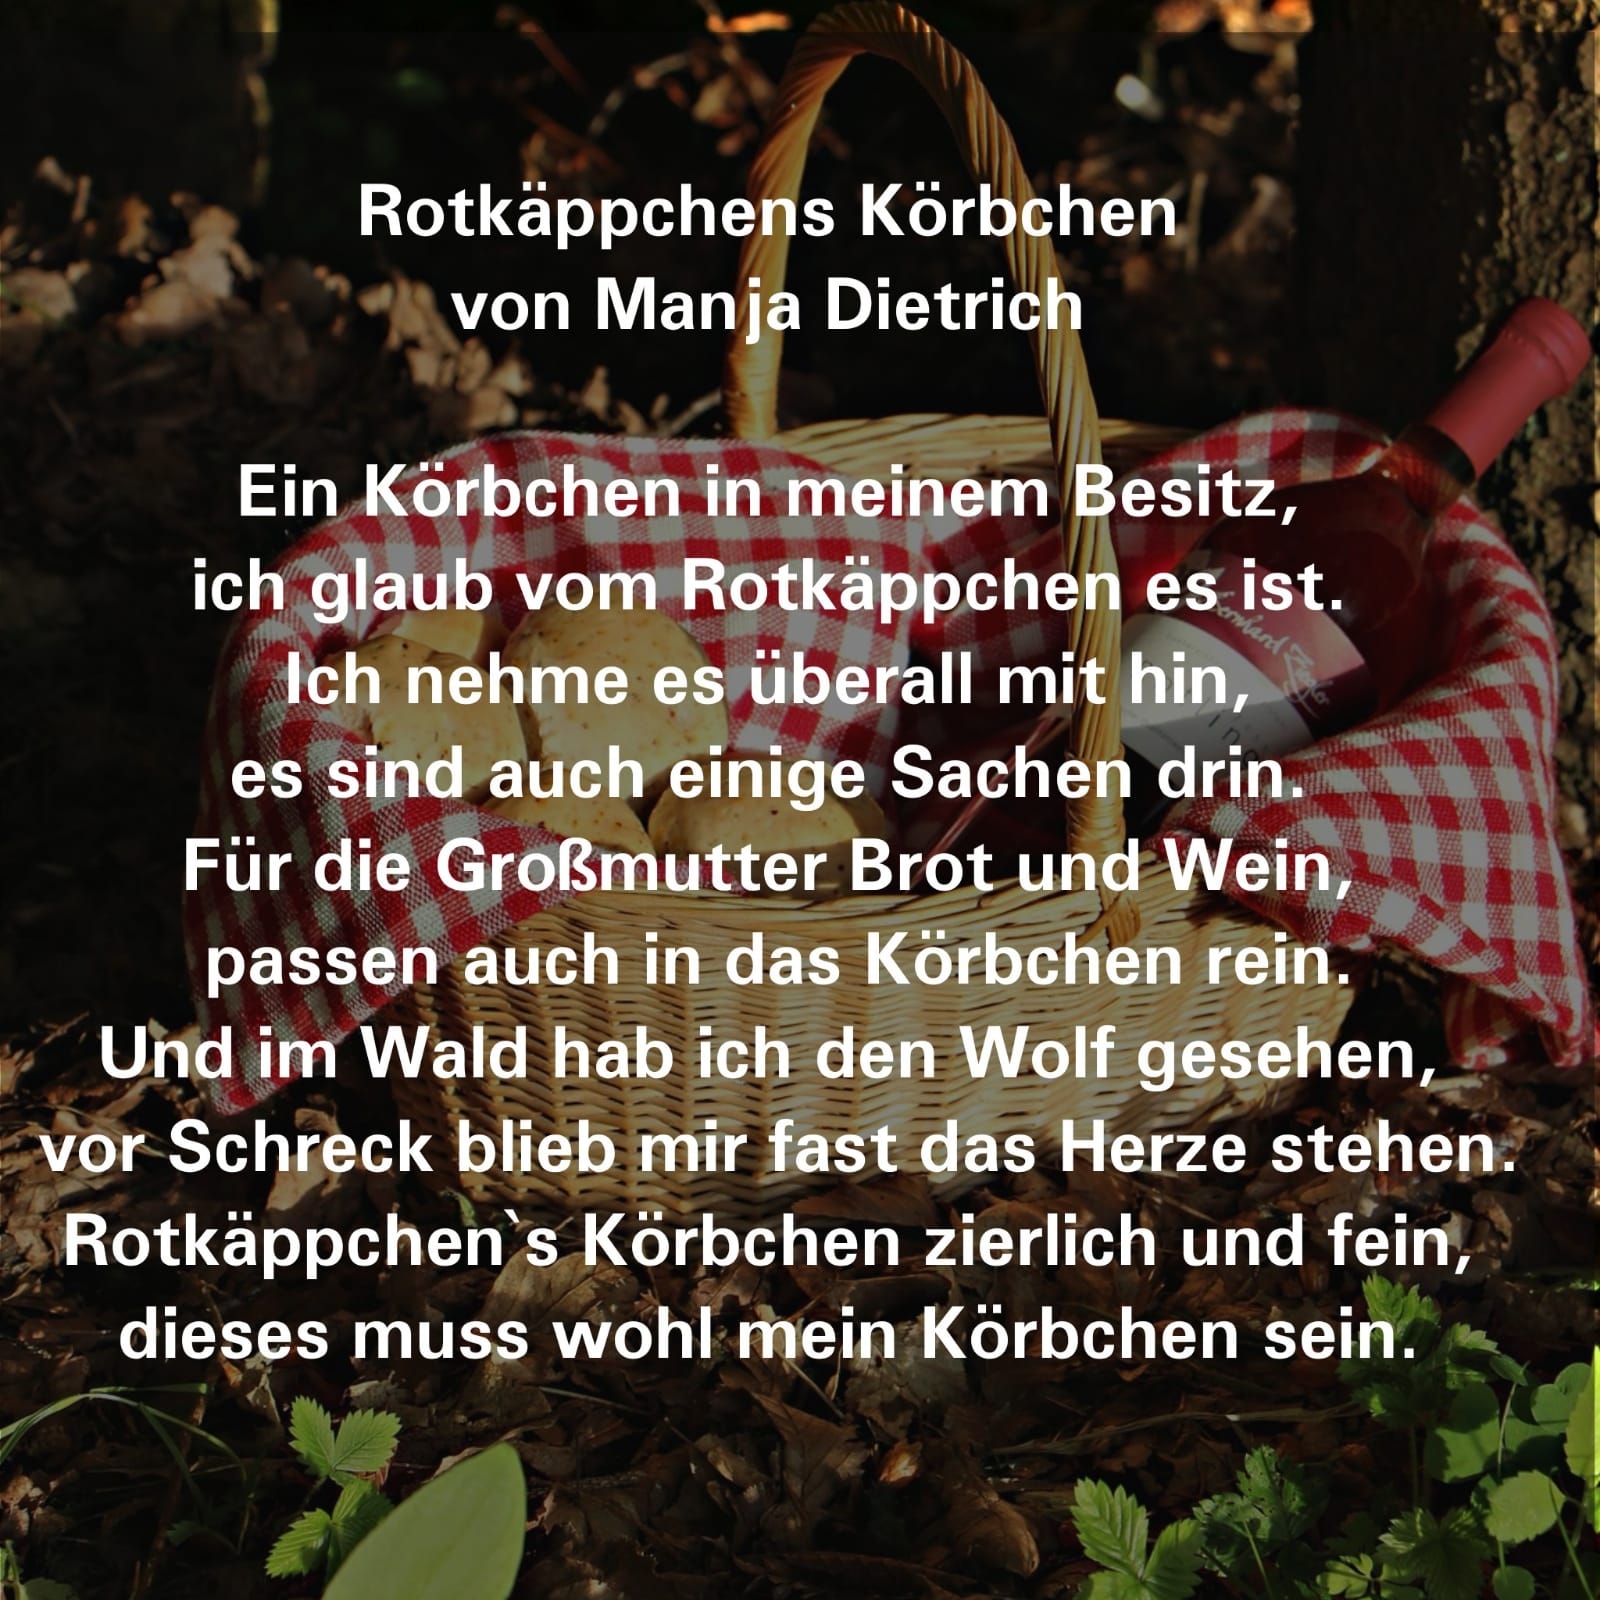 Rotkäppchens Körbchen - Ein Bildgedicht von Manja Dietrich